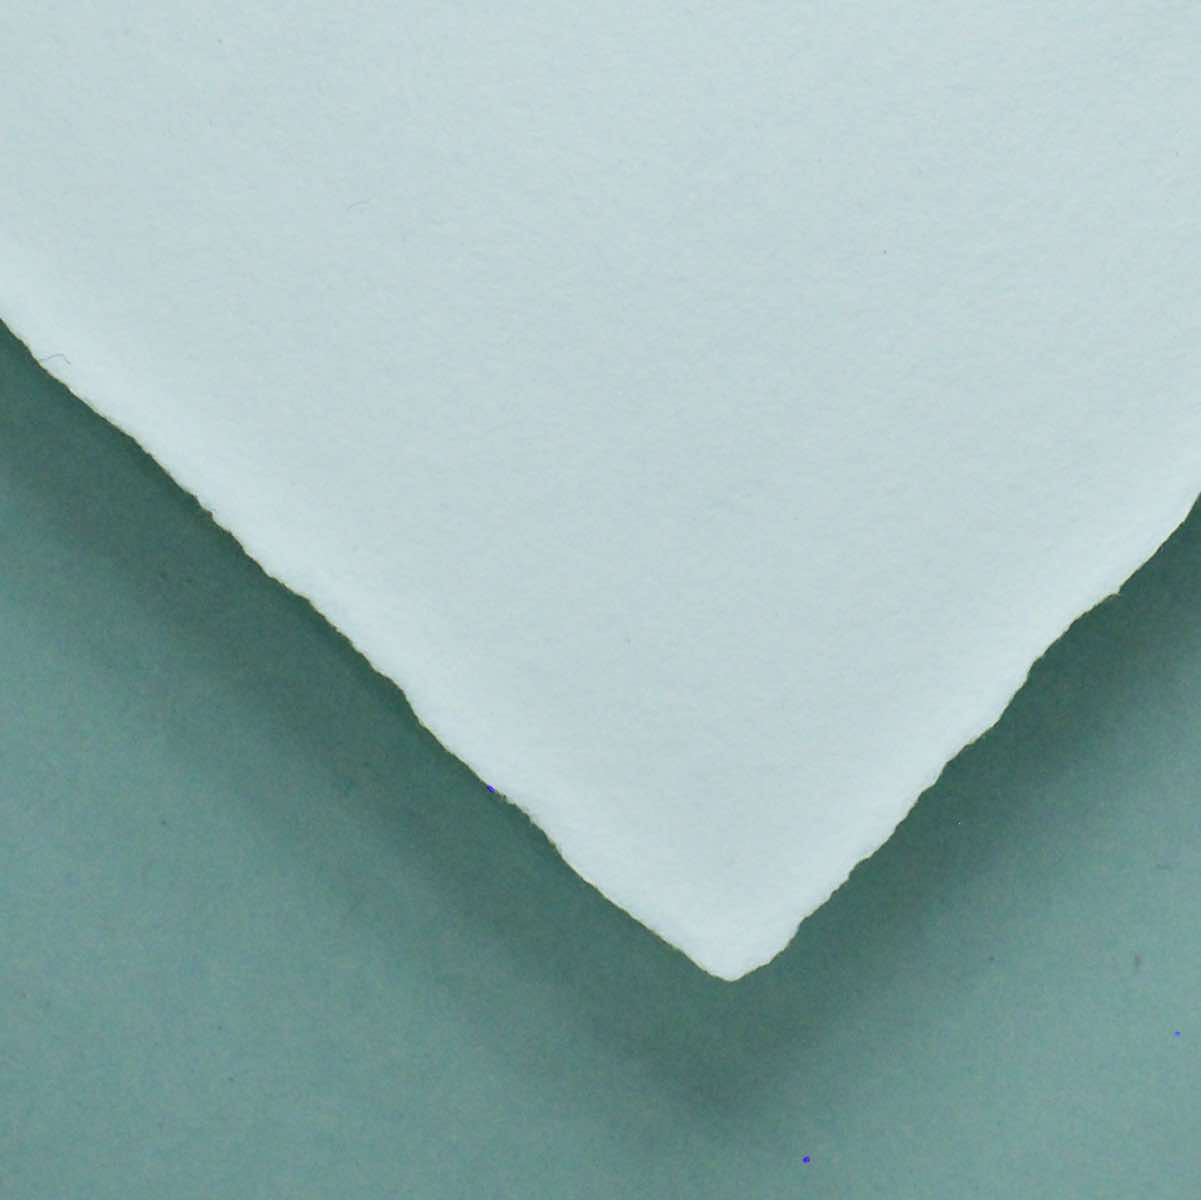 Büttenpapier DIN-A4 - naturweiß